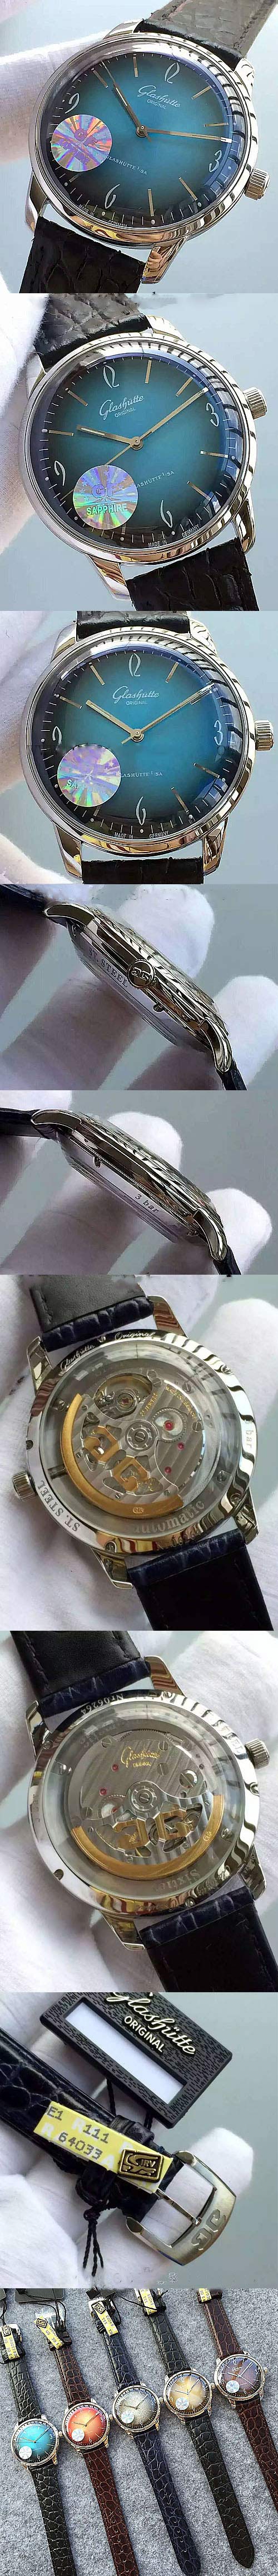 スイスブランド腕時計カルティエcal.39-59(メーカーJF)